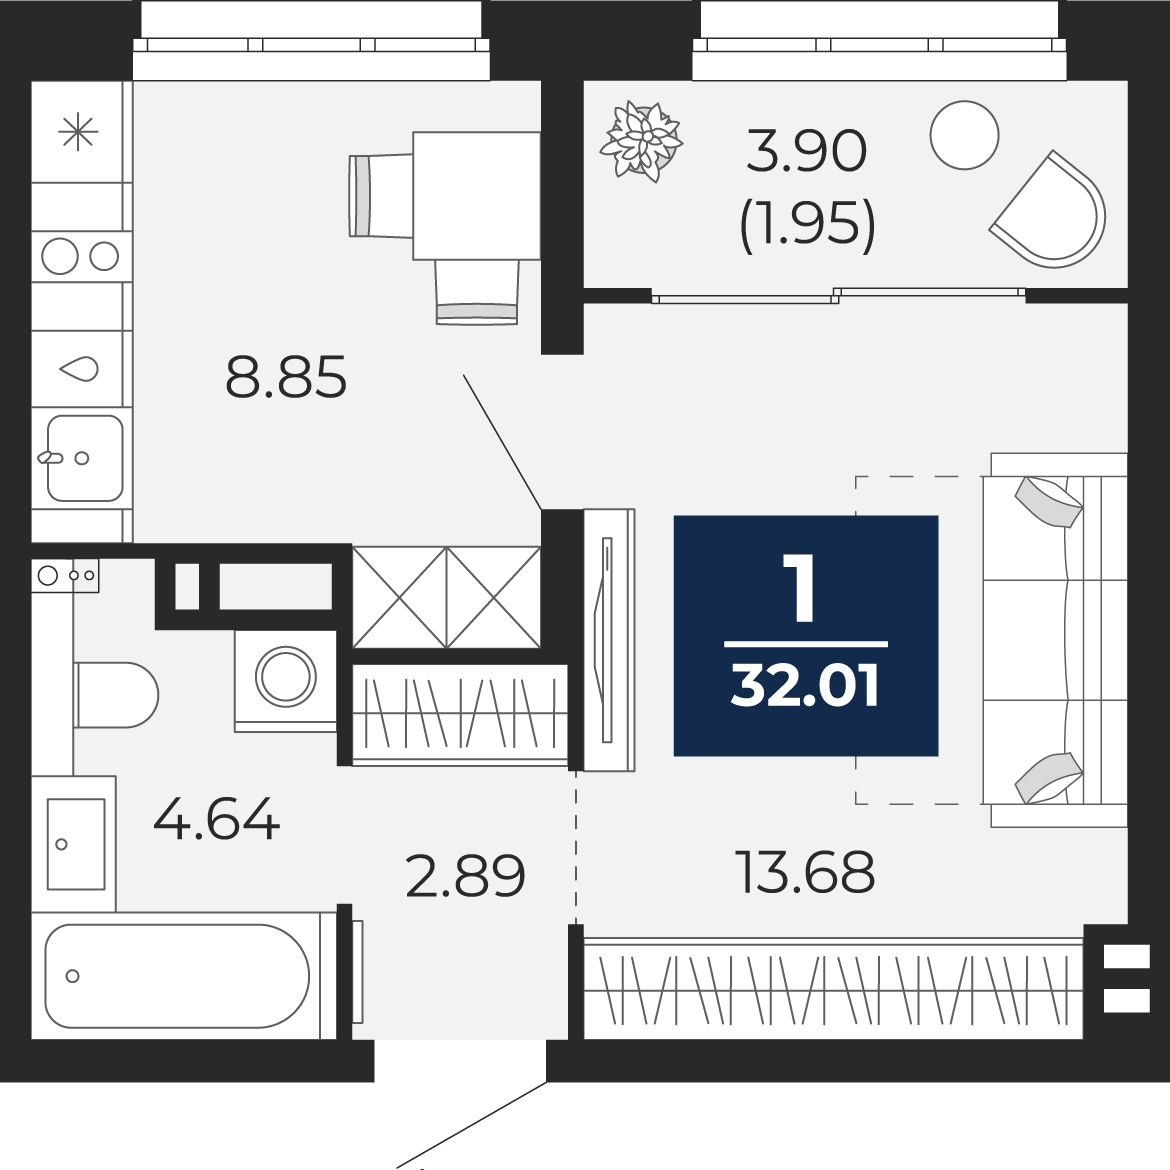 Квартира № 260, 1-комнатная, 32.01 кв. м, 7 этаж